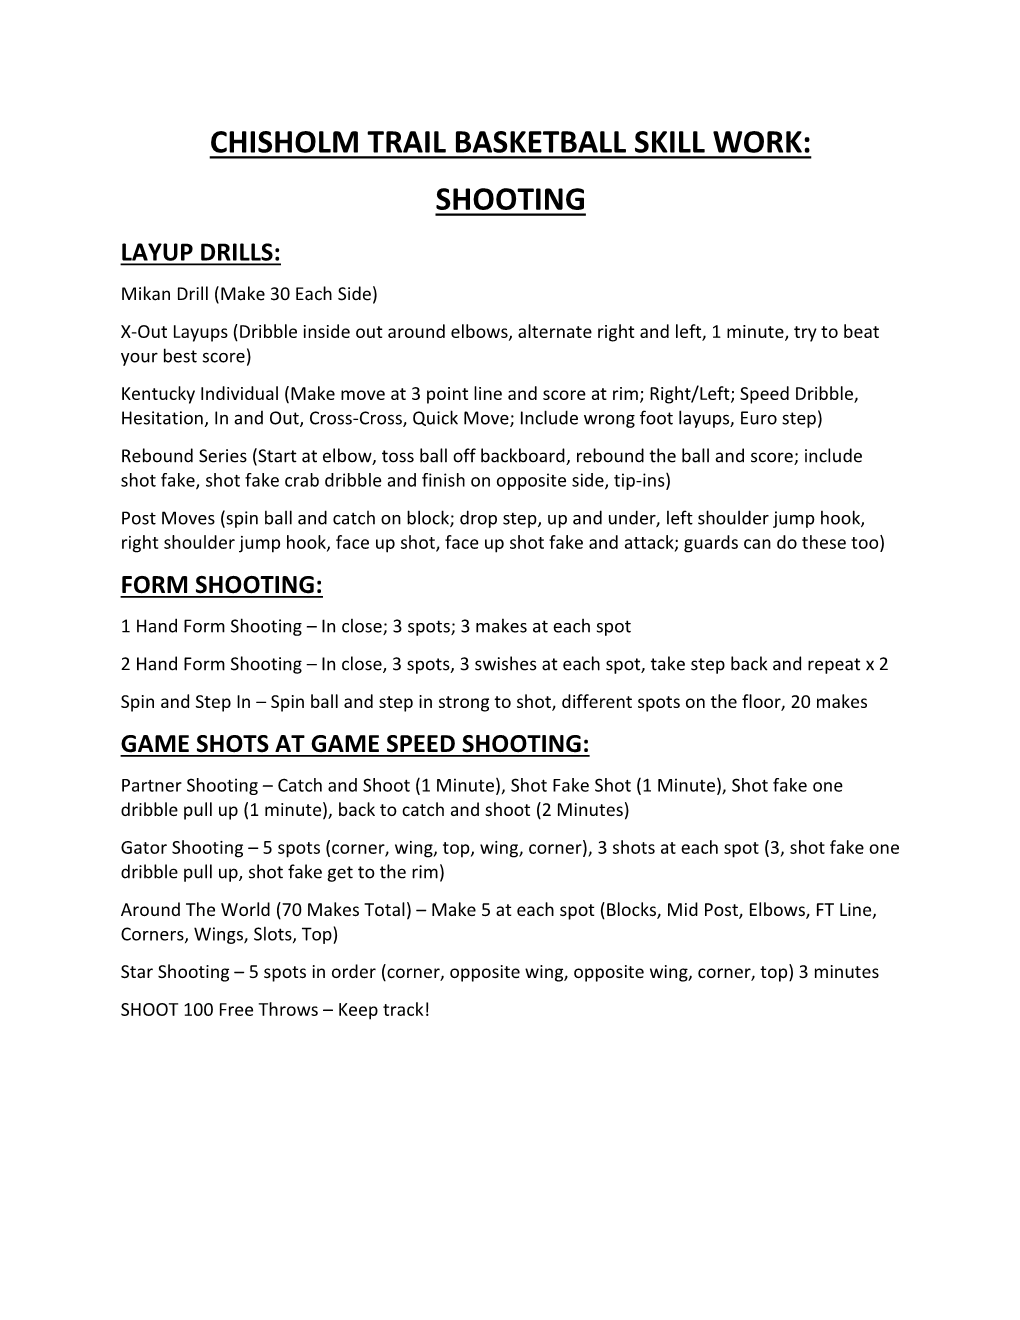 Chisholm Trail Basketball Skill Work: Shooting